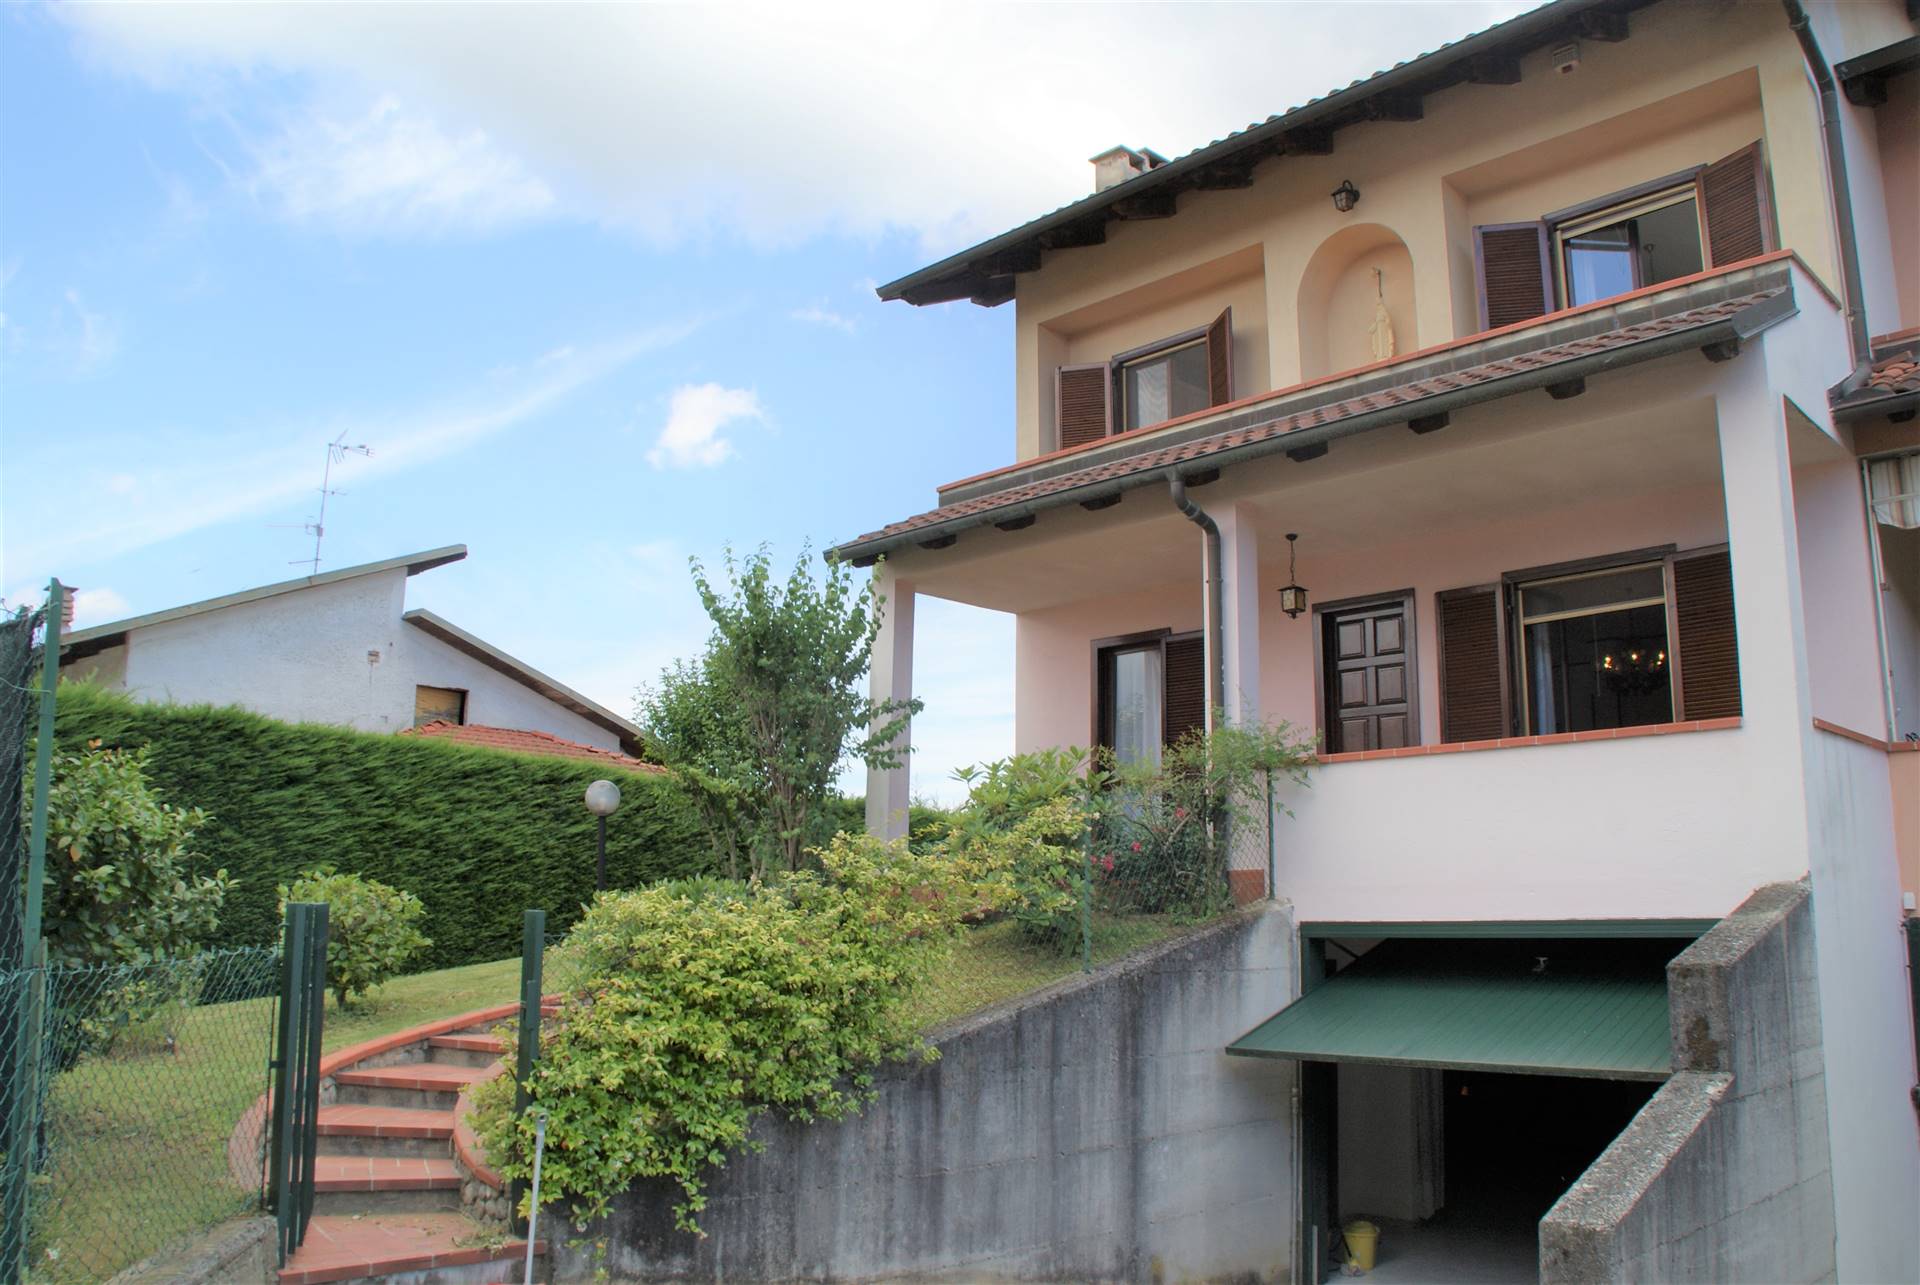 Villa a Schiera in vendita a Mongrando, 5 locali, prezzo € 165.000 | CambioCasa.it